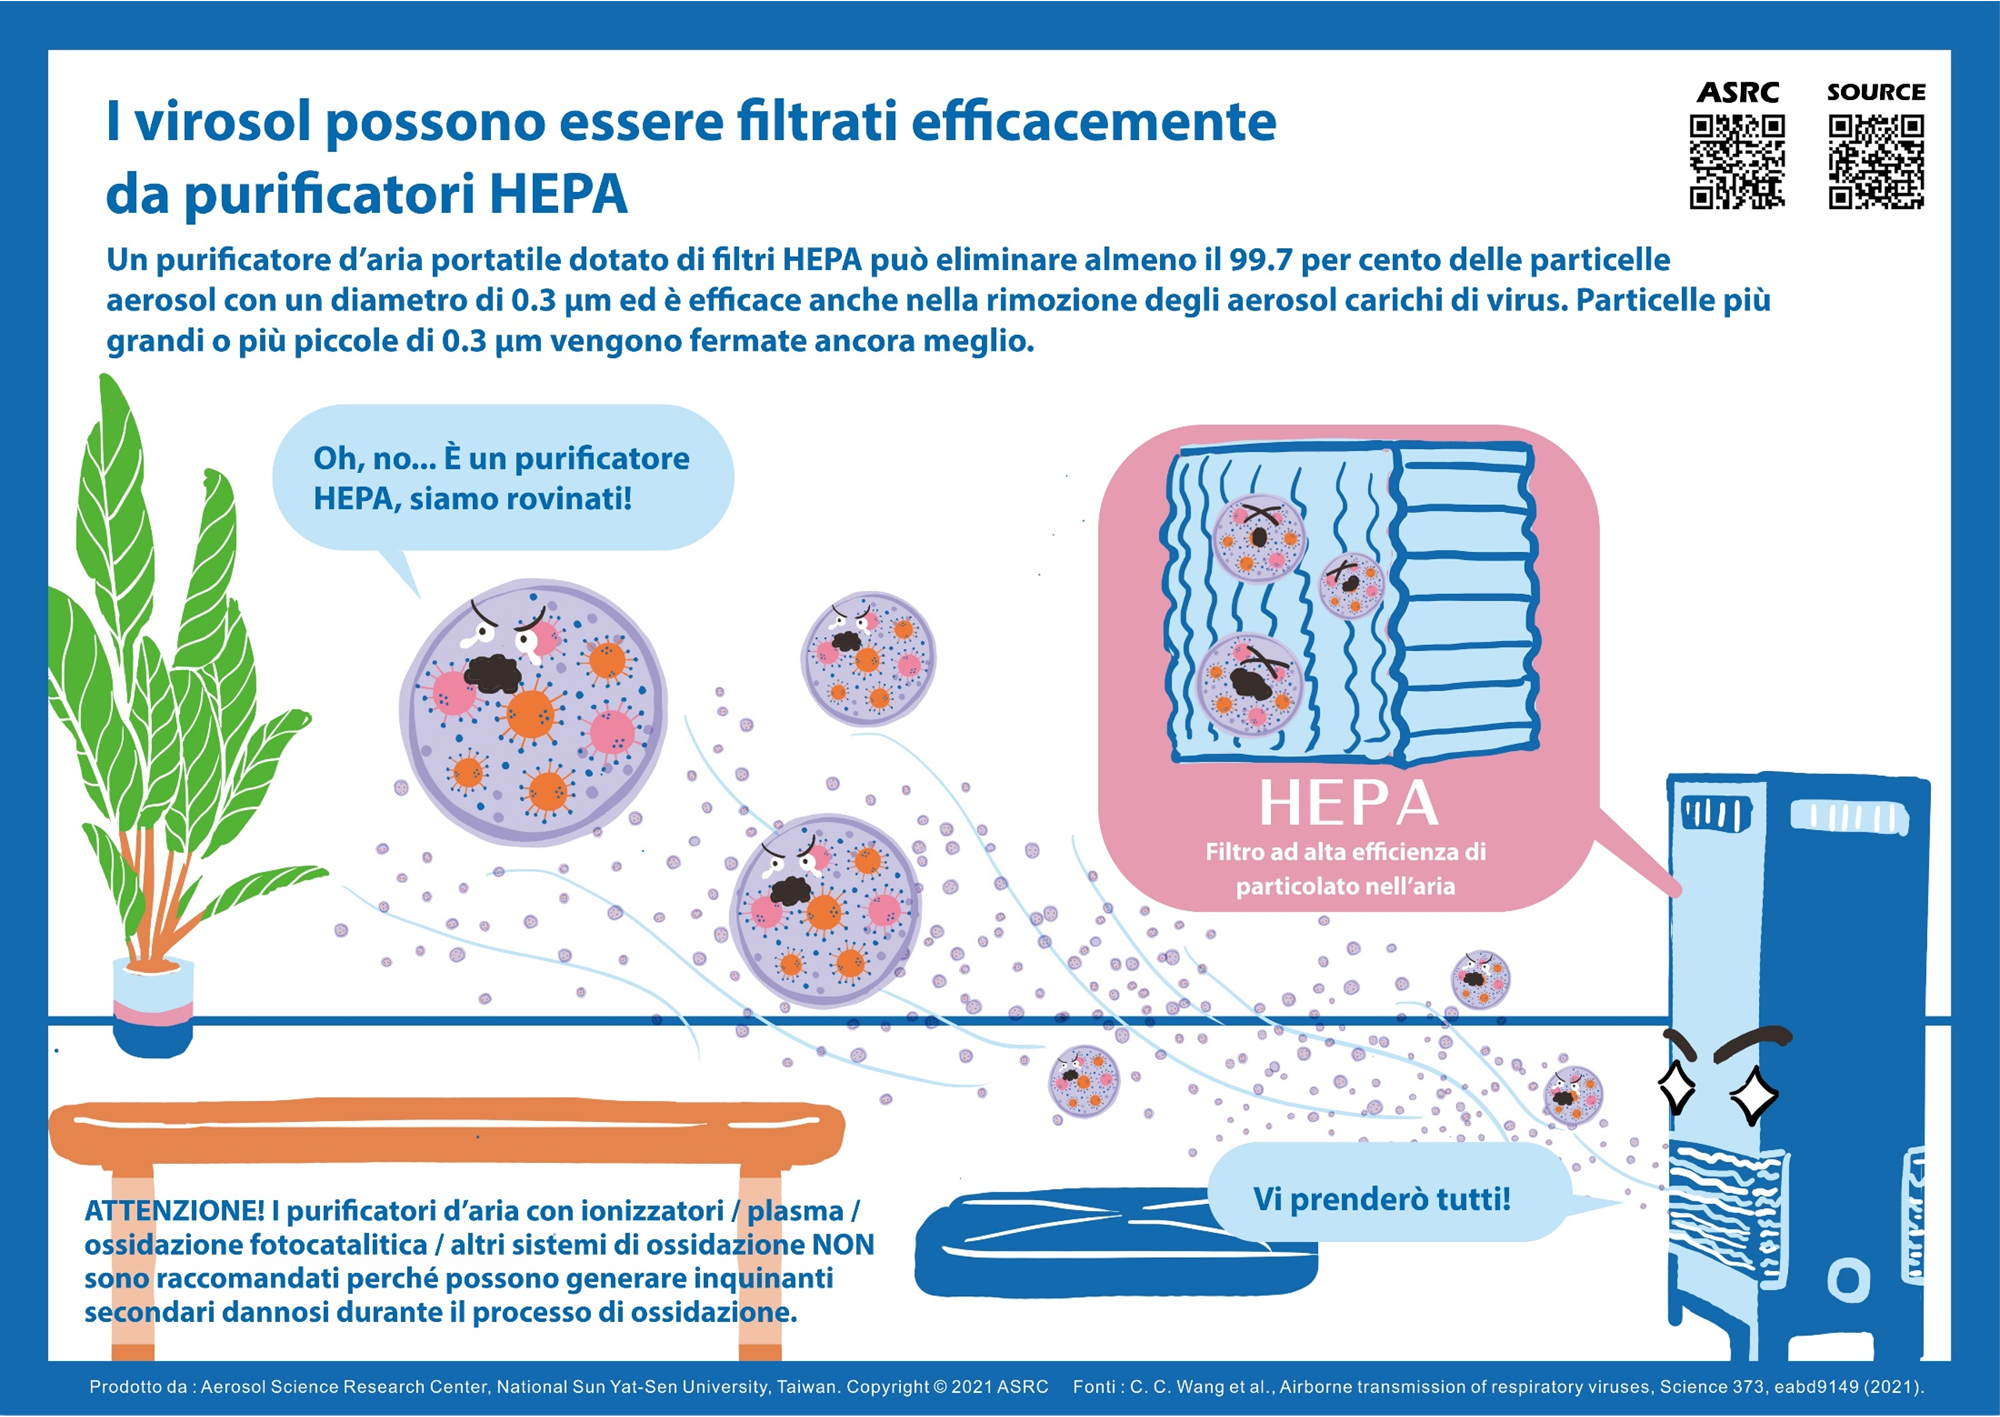 I virosol possono essere filtrati efficacemente da purificatori HEPA